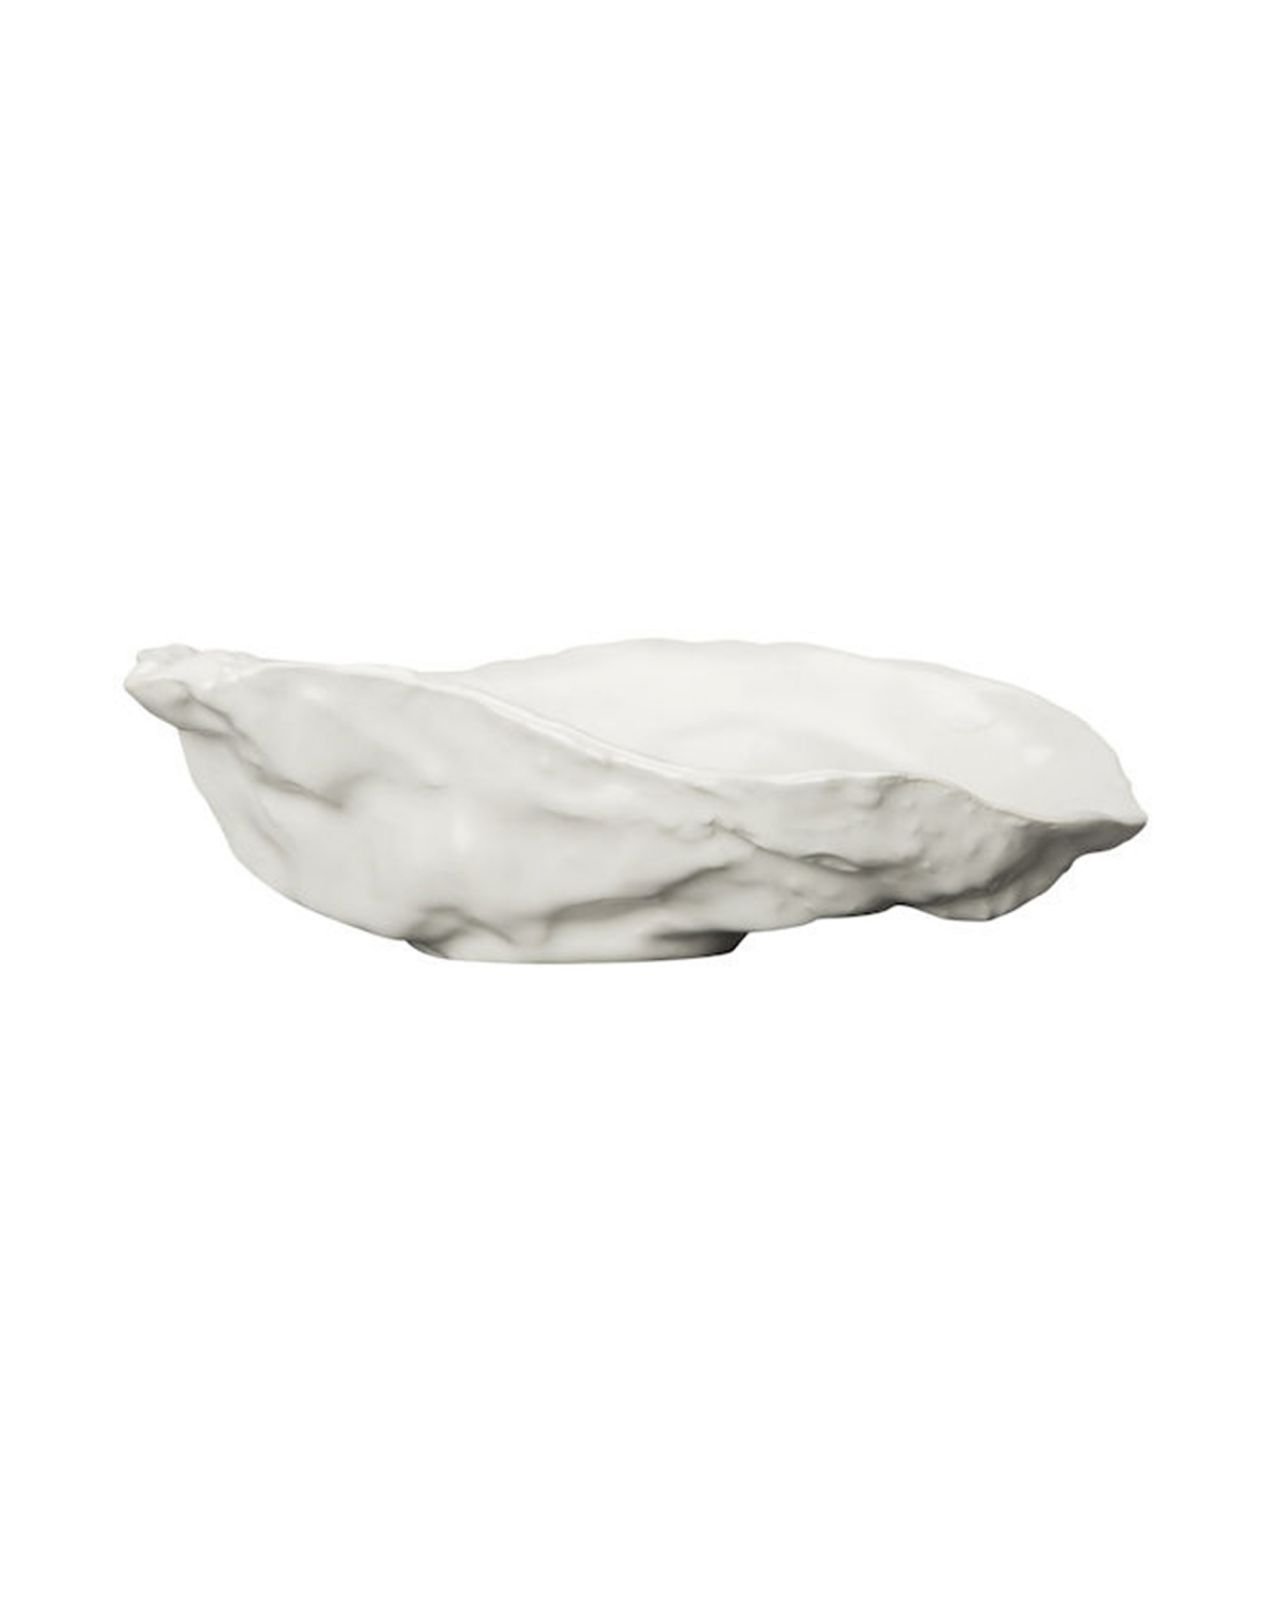 Oyster serveringskål, hvit